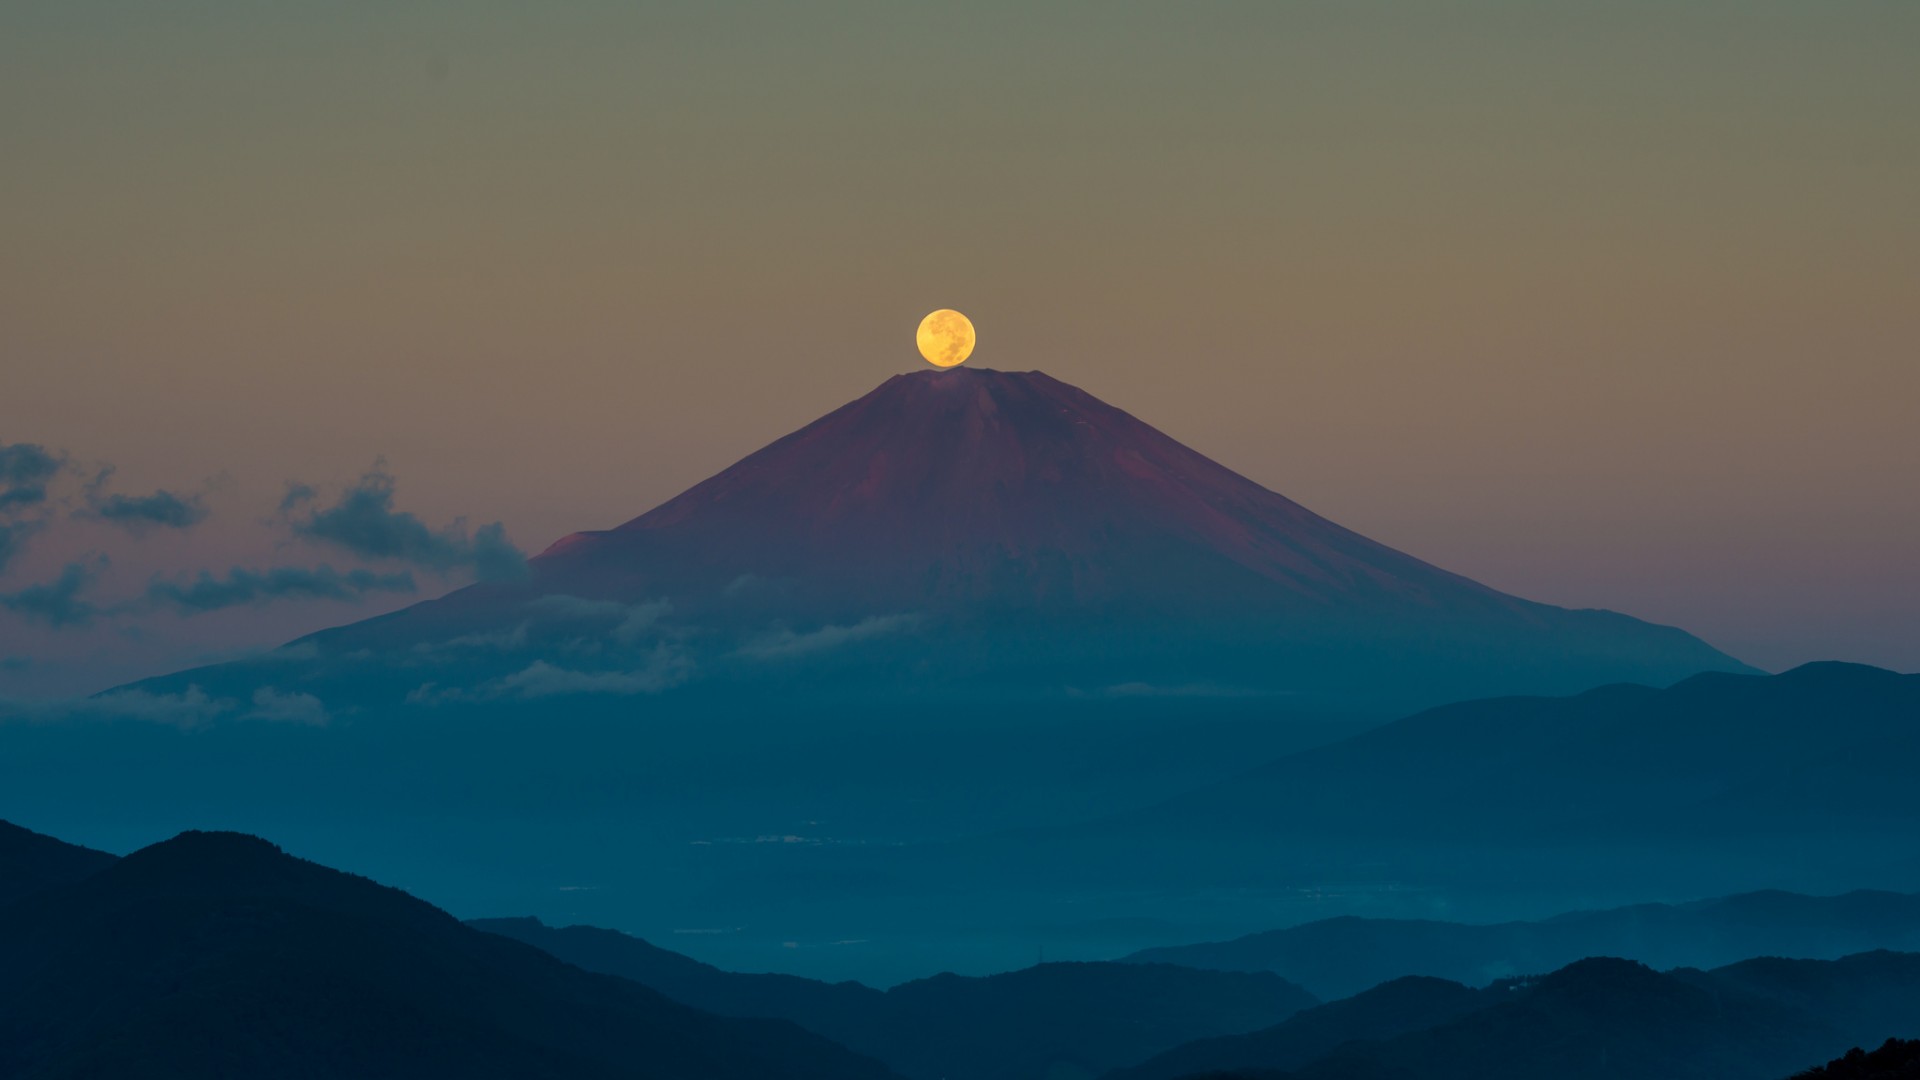 日本本州岛,火山,月亮,风景桌面壁纸